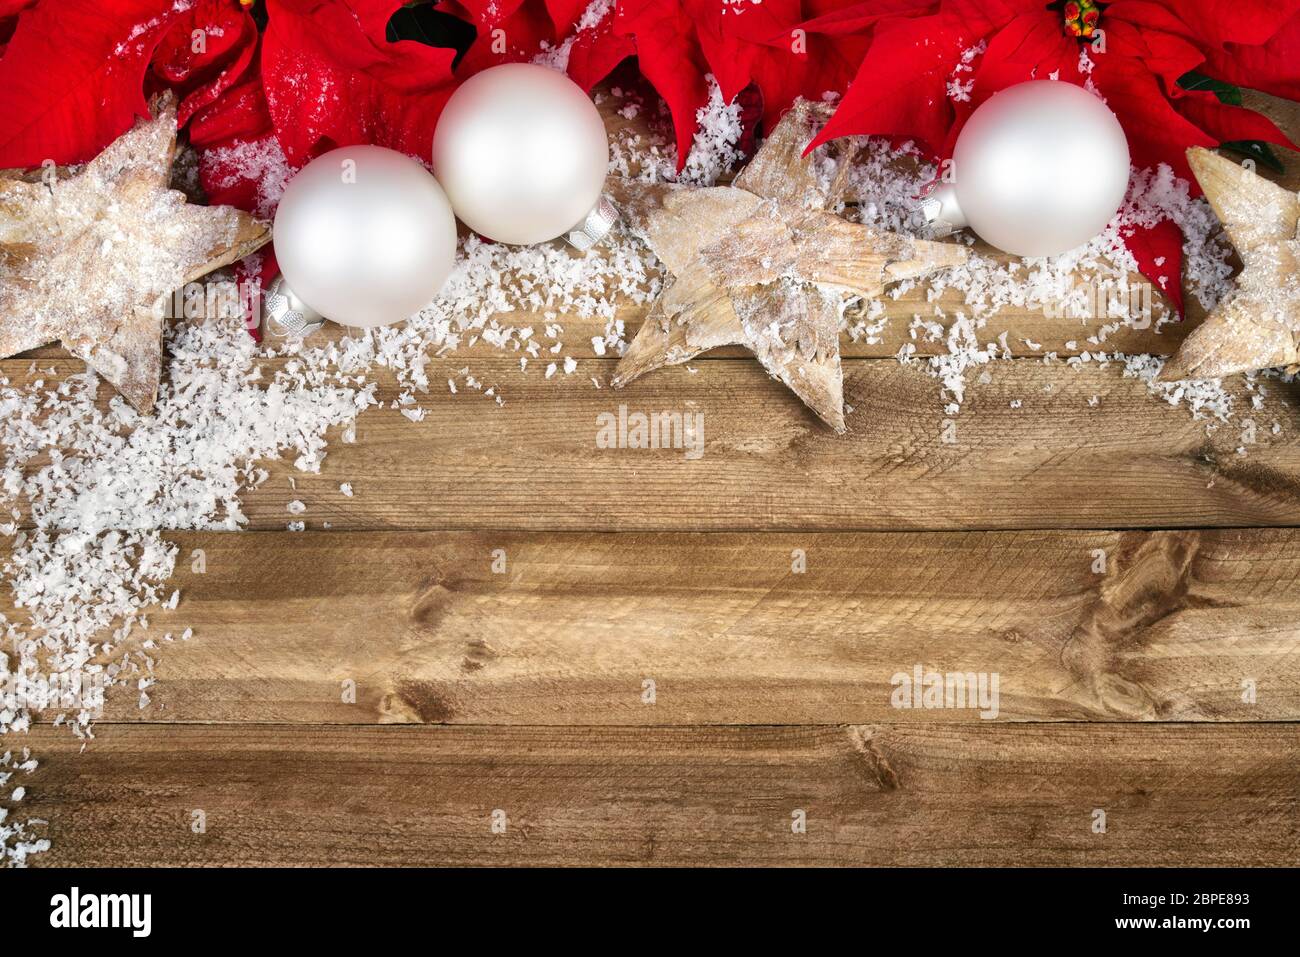 Weihnachtliches Arrangement auf einem rustikalen Holz-Hintergrund Stock Photo